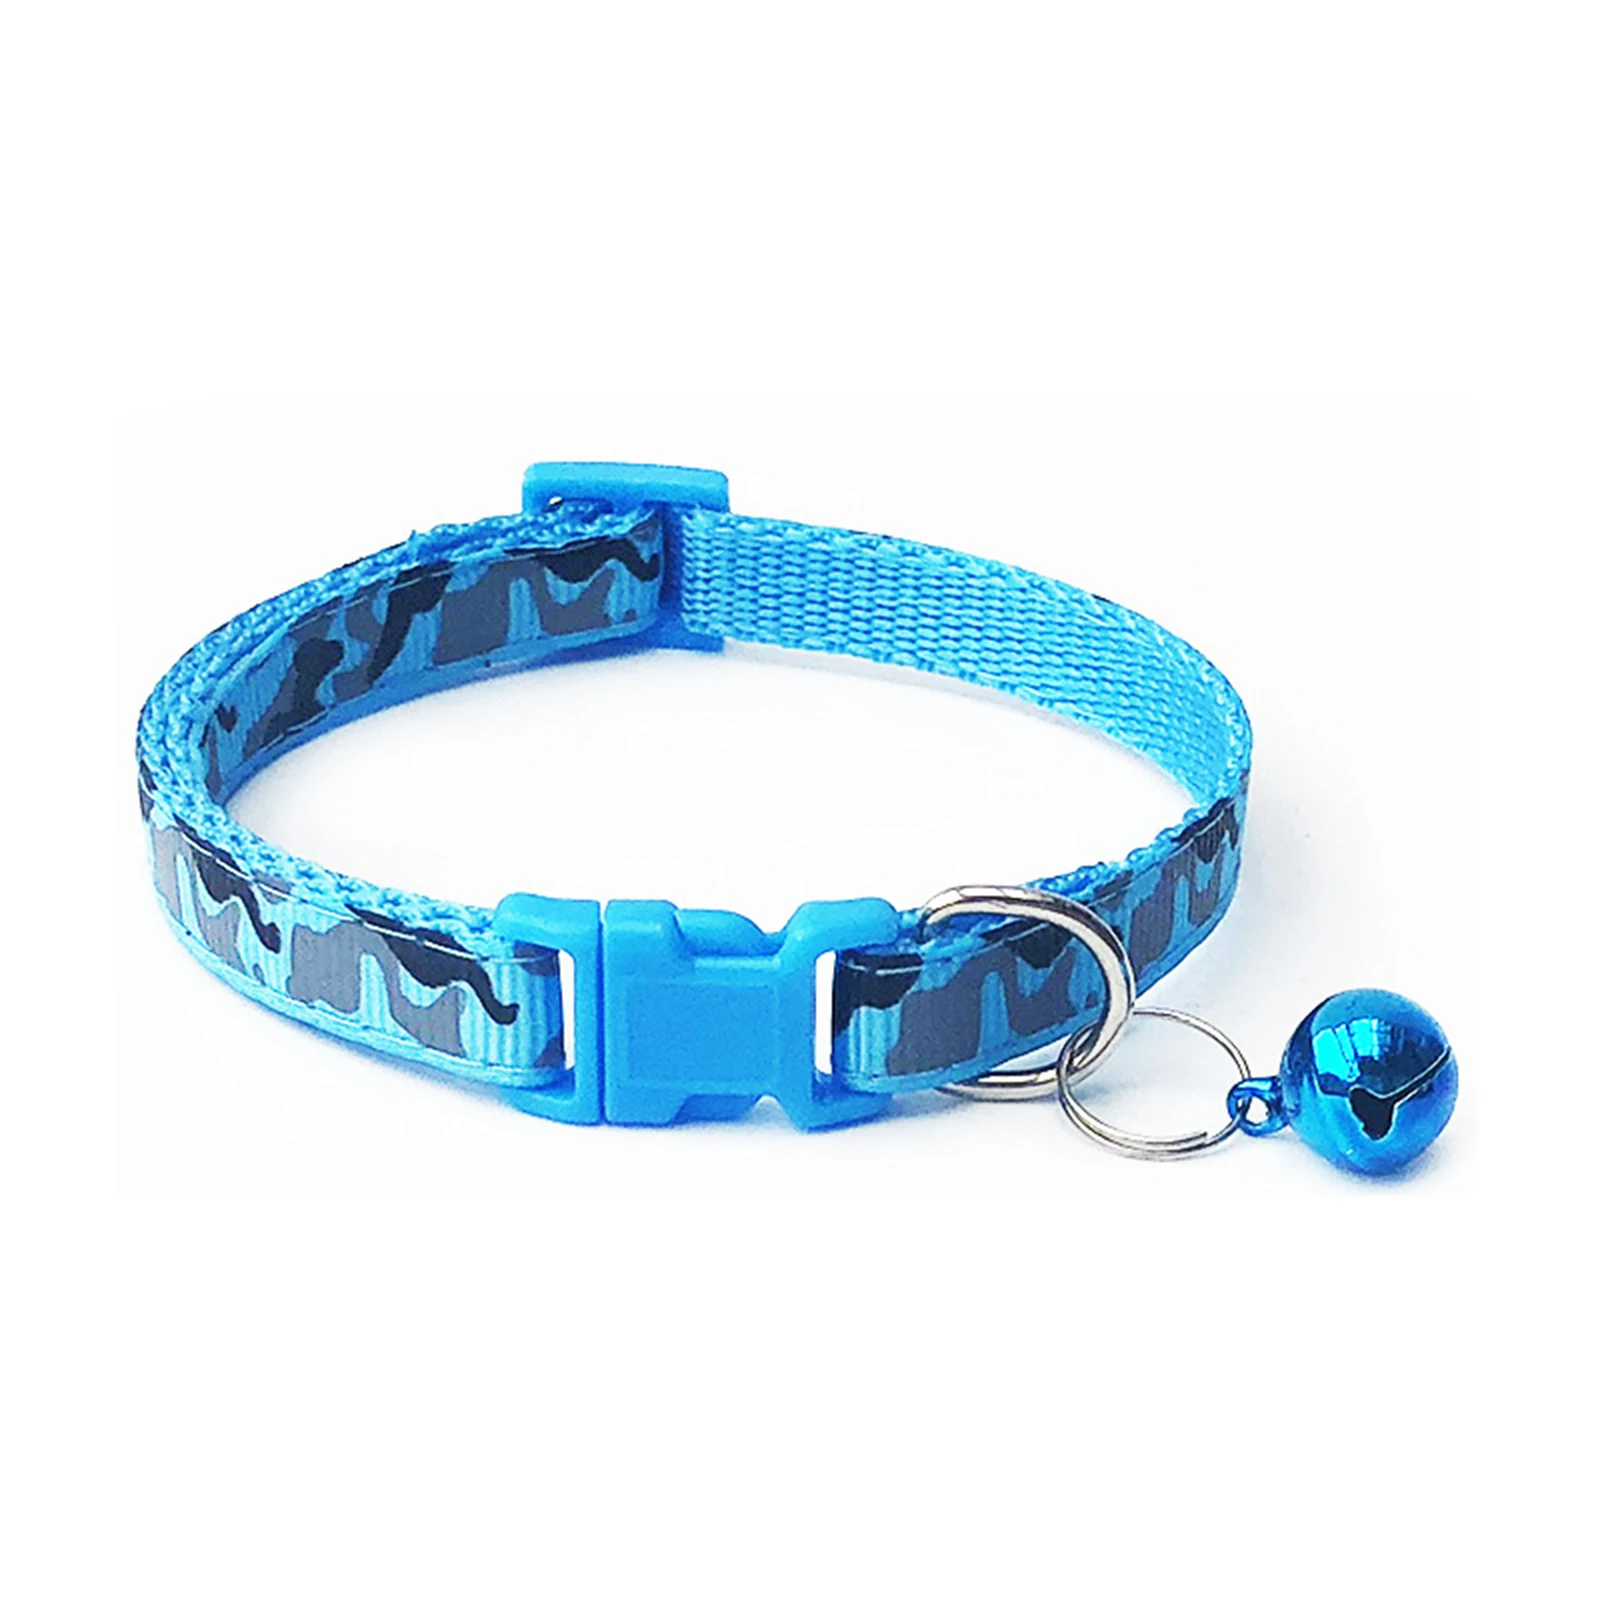 LPxdywlk Collar De Perro Mascota Piel Sintética Hebilla De Seguridad Ajustable Correa De Cuello De Gatito Accesorios para Exteriores Azul XS